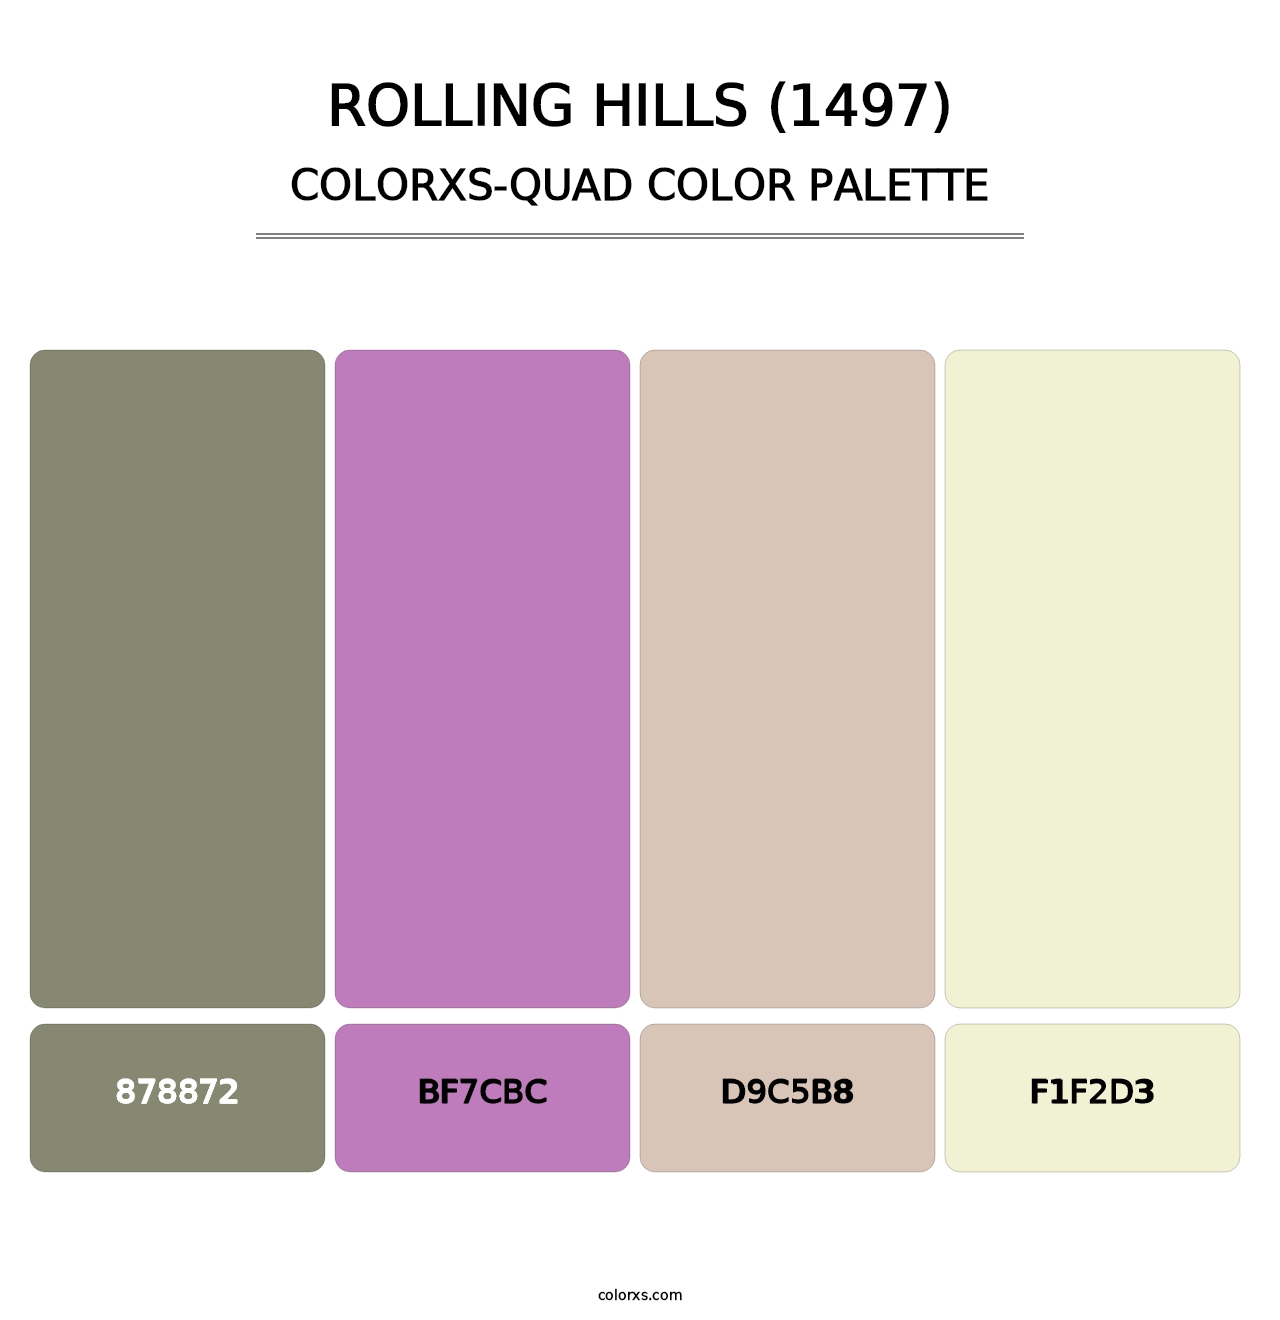 Rolling Hills (1497) - Colorxs Quad Palette